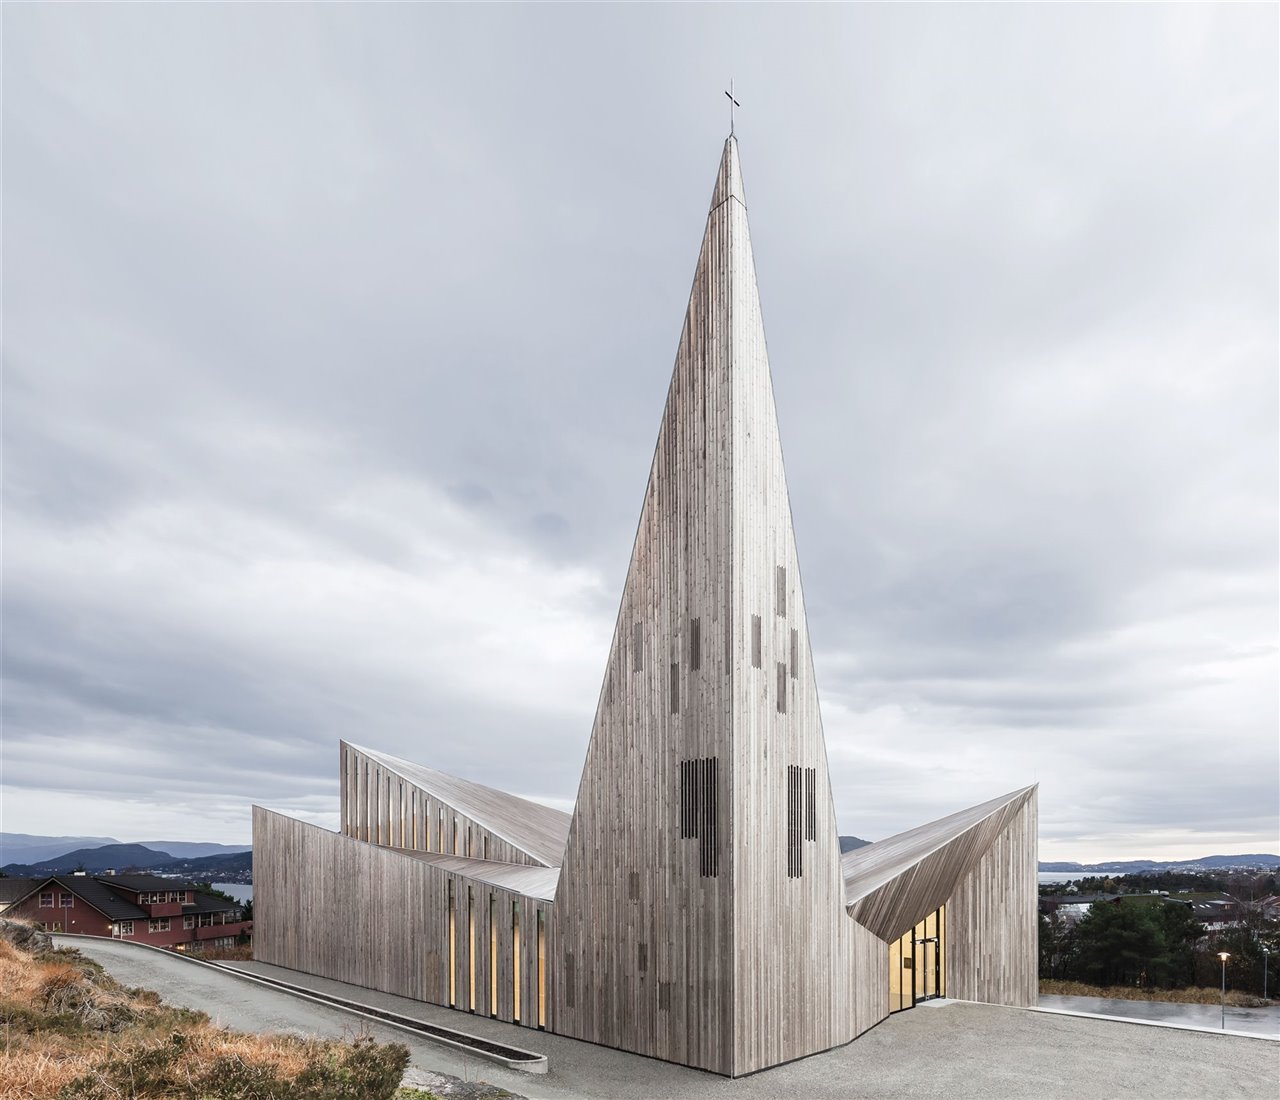 Iglesia en Knarvik, de Rieulf Ramstad Arkitekter, que ha puesto al día los códigos constructivos de los templos tradicionales noruegos. En ella se ha empleado cedro, pino termotratado y abedul. 